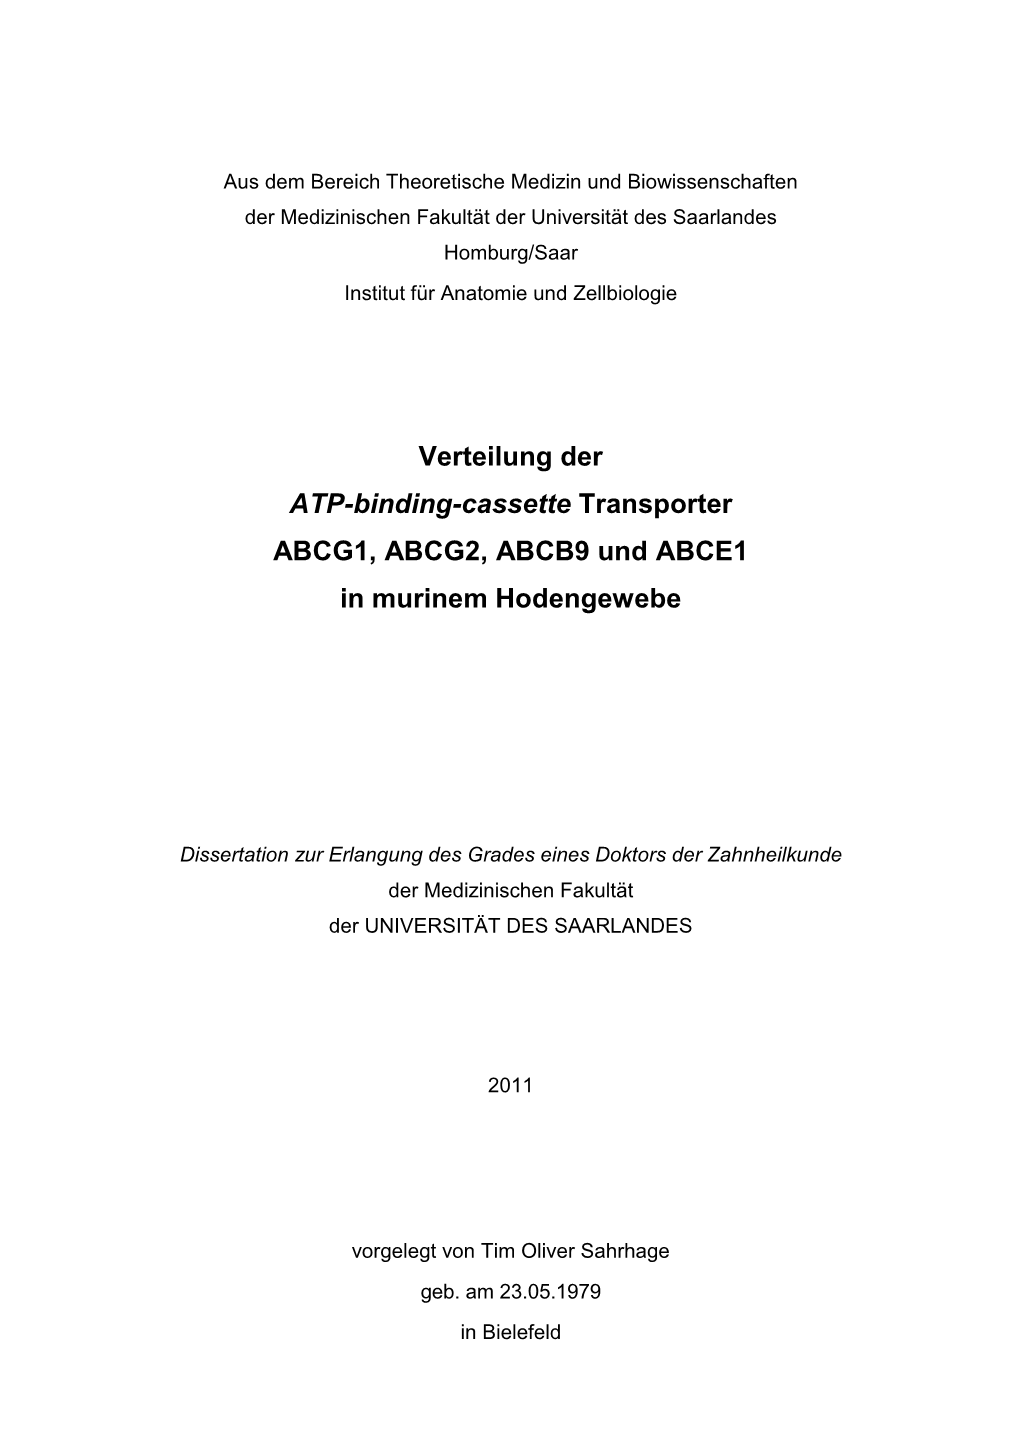 Verteilung Der ATP-Binding-Cassette Transporter ABCG1, ABCG2, ABCB9 Und ABCE1 in Murinem Hodengewebe